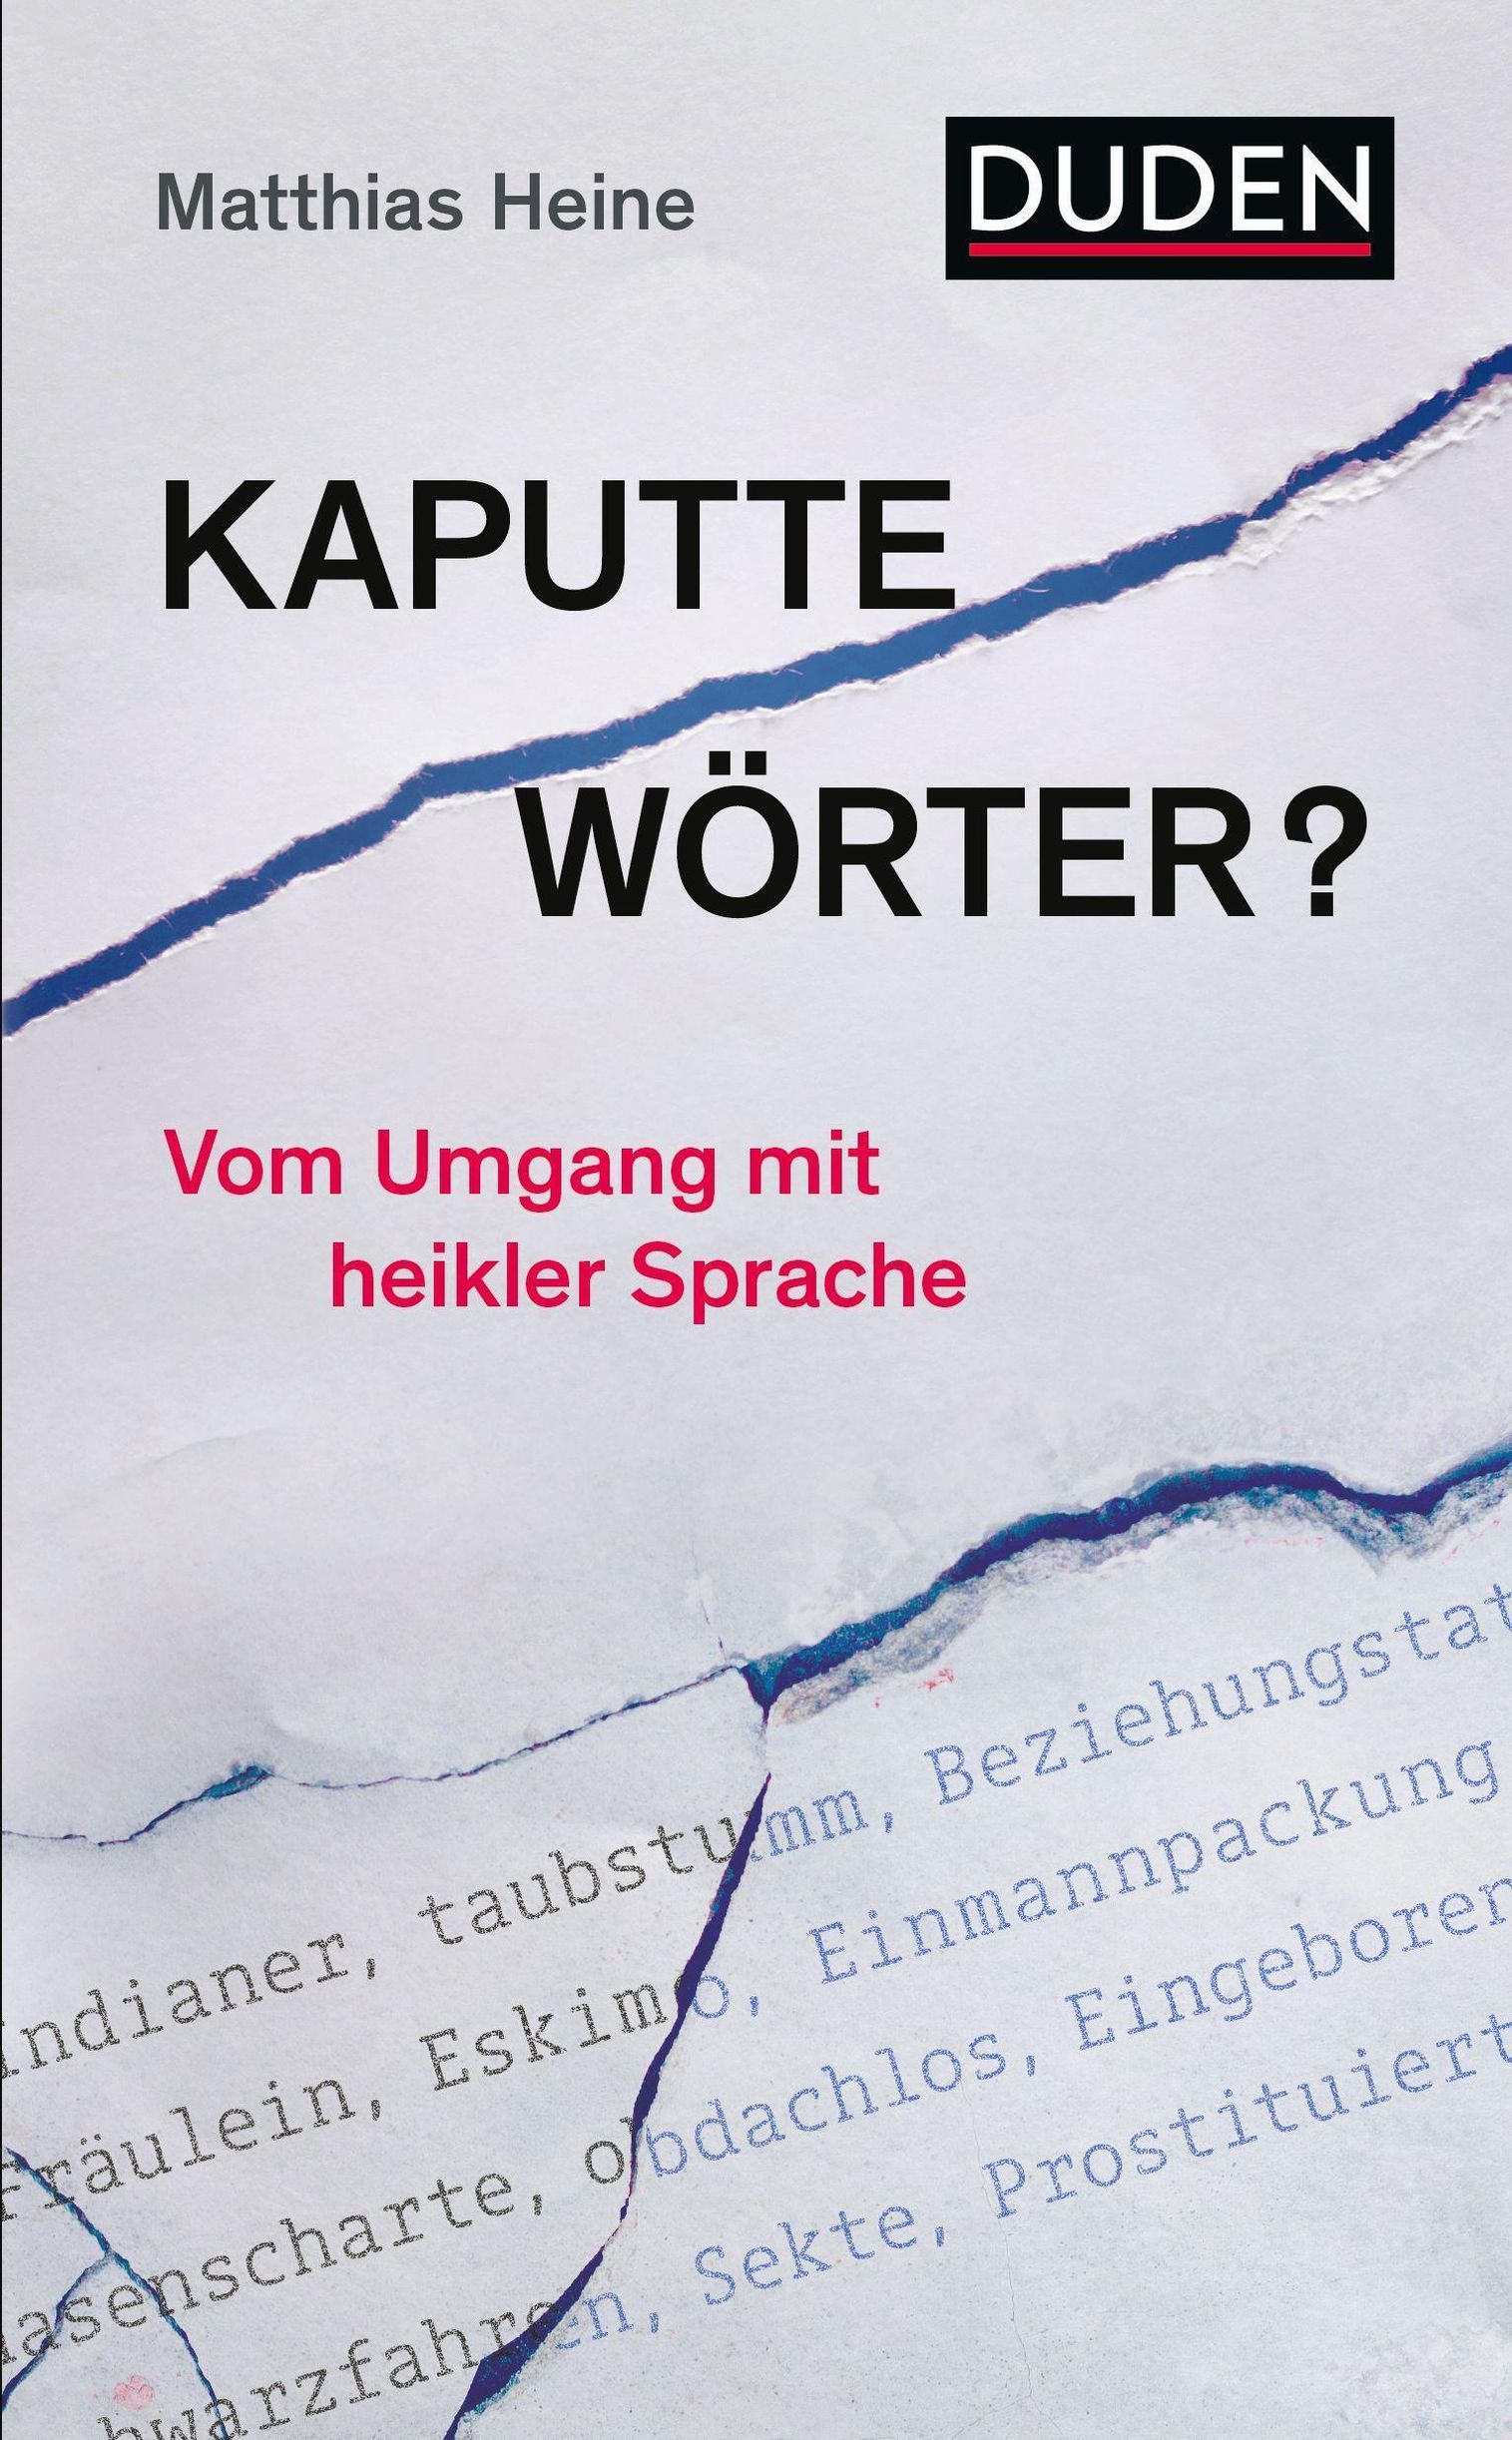 Kaputte Wörter? Buch von Matthias Heine versandkostenfrei bei Weltbild.de